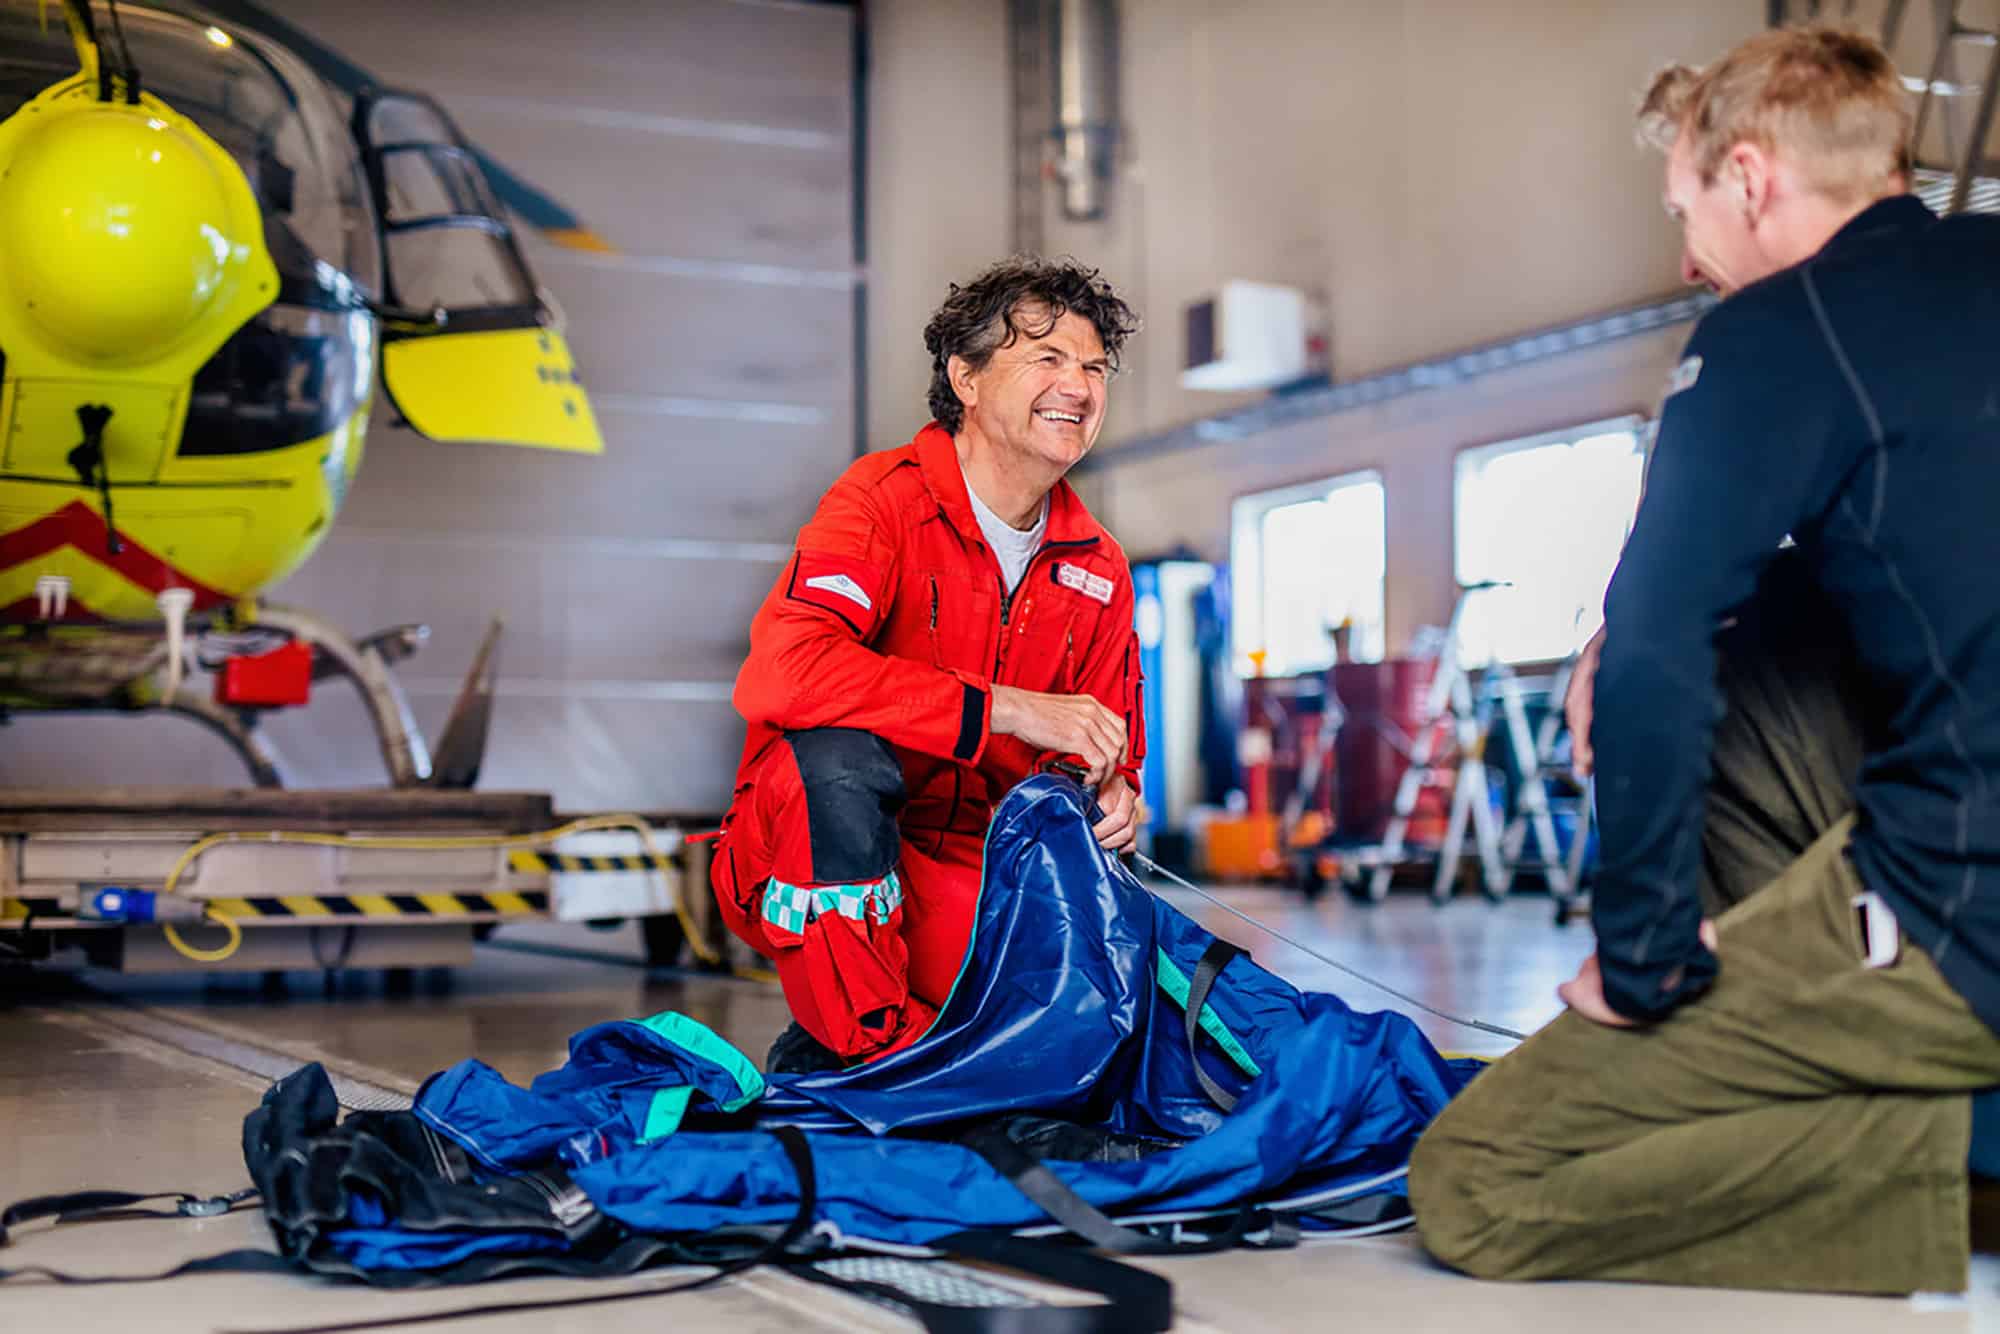 Redningsmann Lasse Fossedal pakker utstyr og snakker med en kollega foran legehelikopteret inne i hangaren